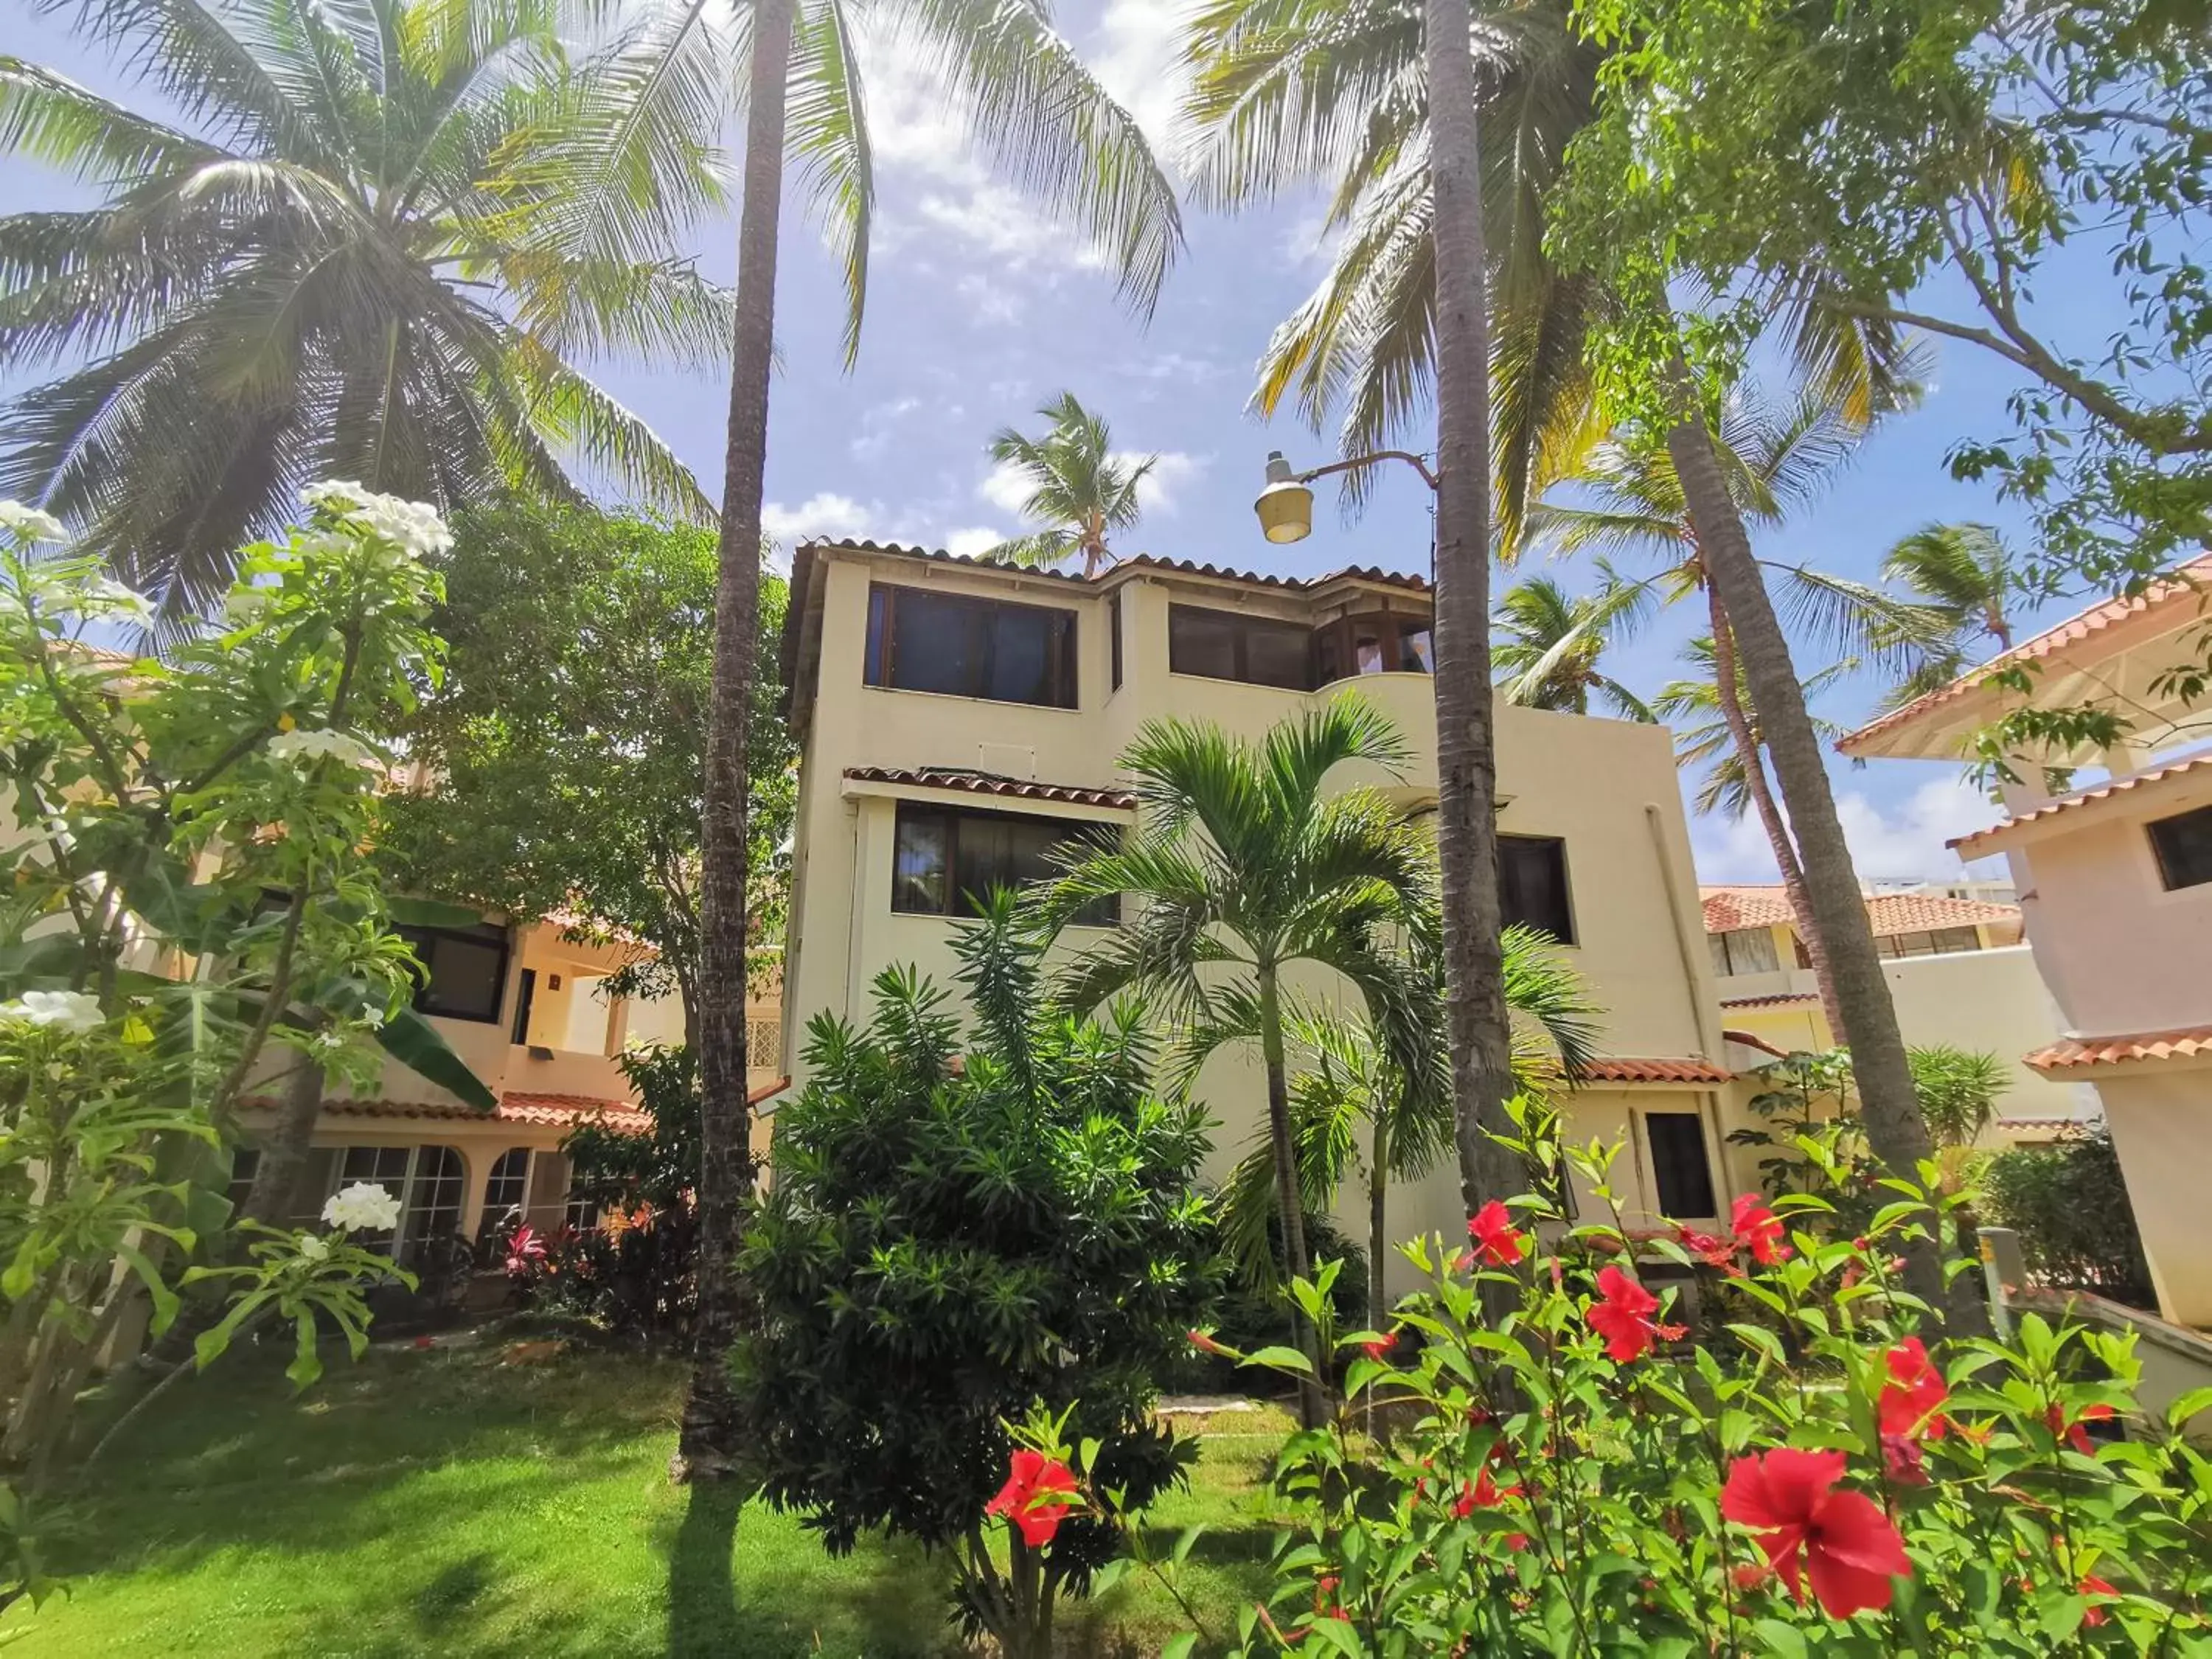 Villa with Sea View in Villas Tropical Los Corales Beach & Spa